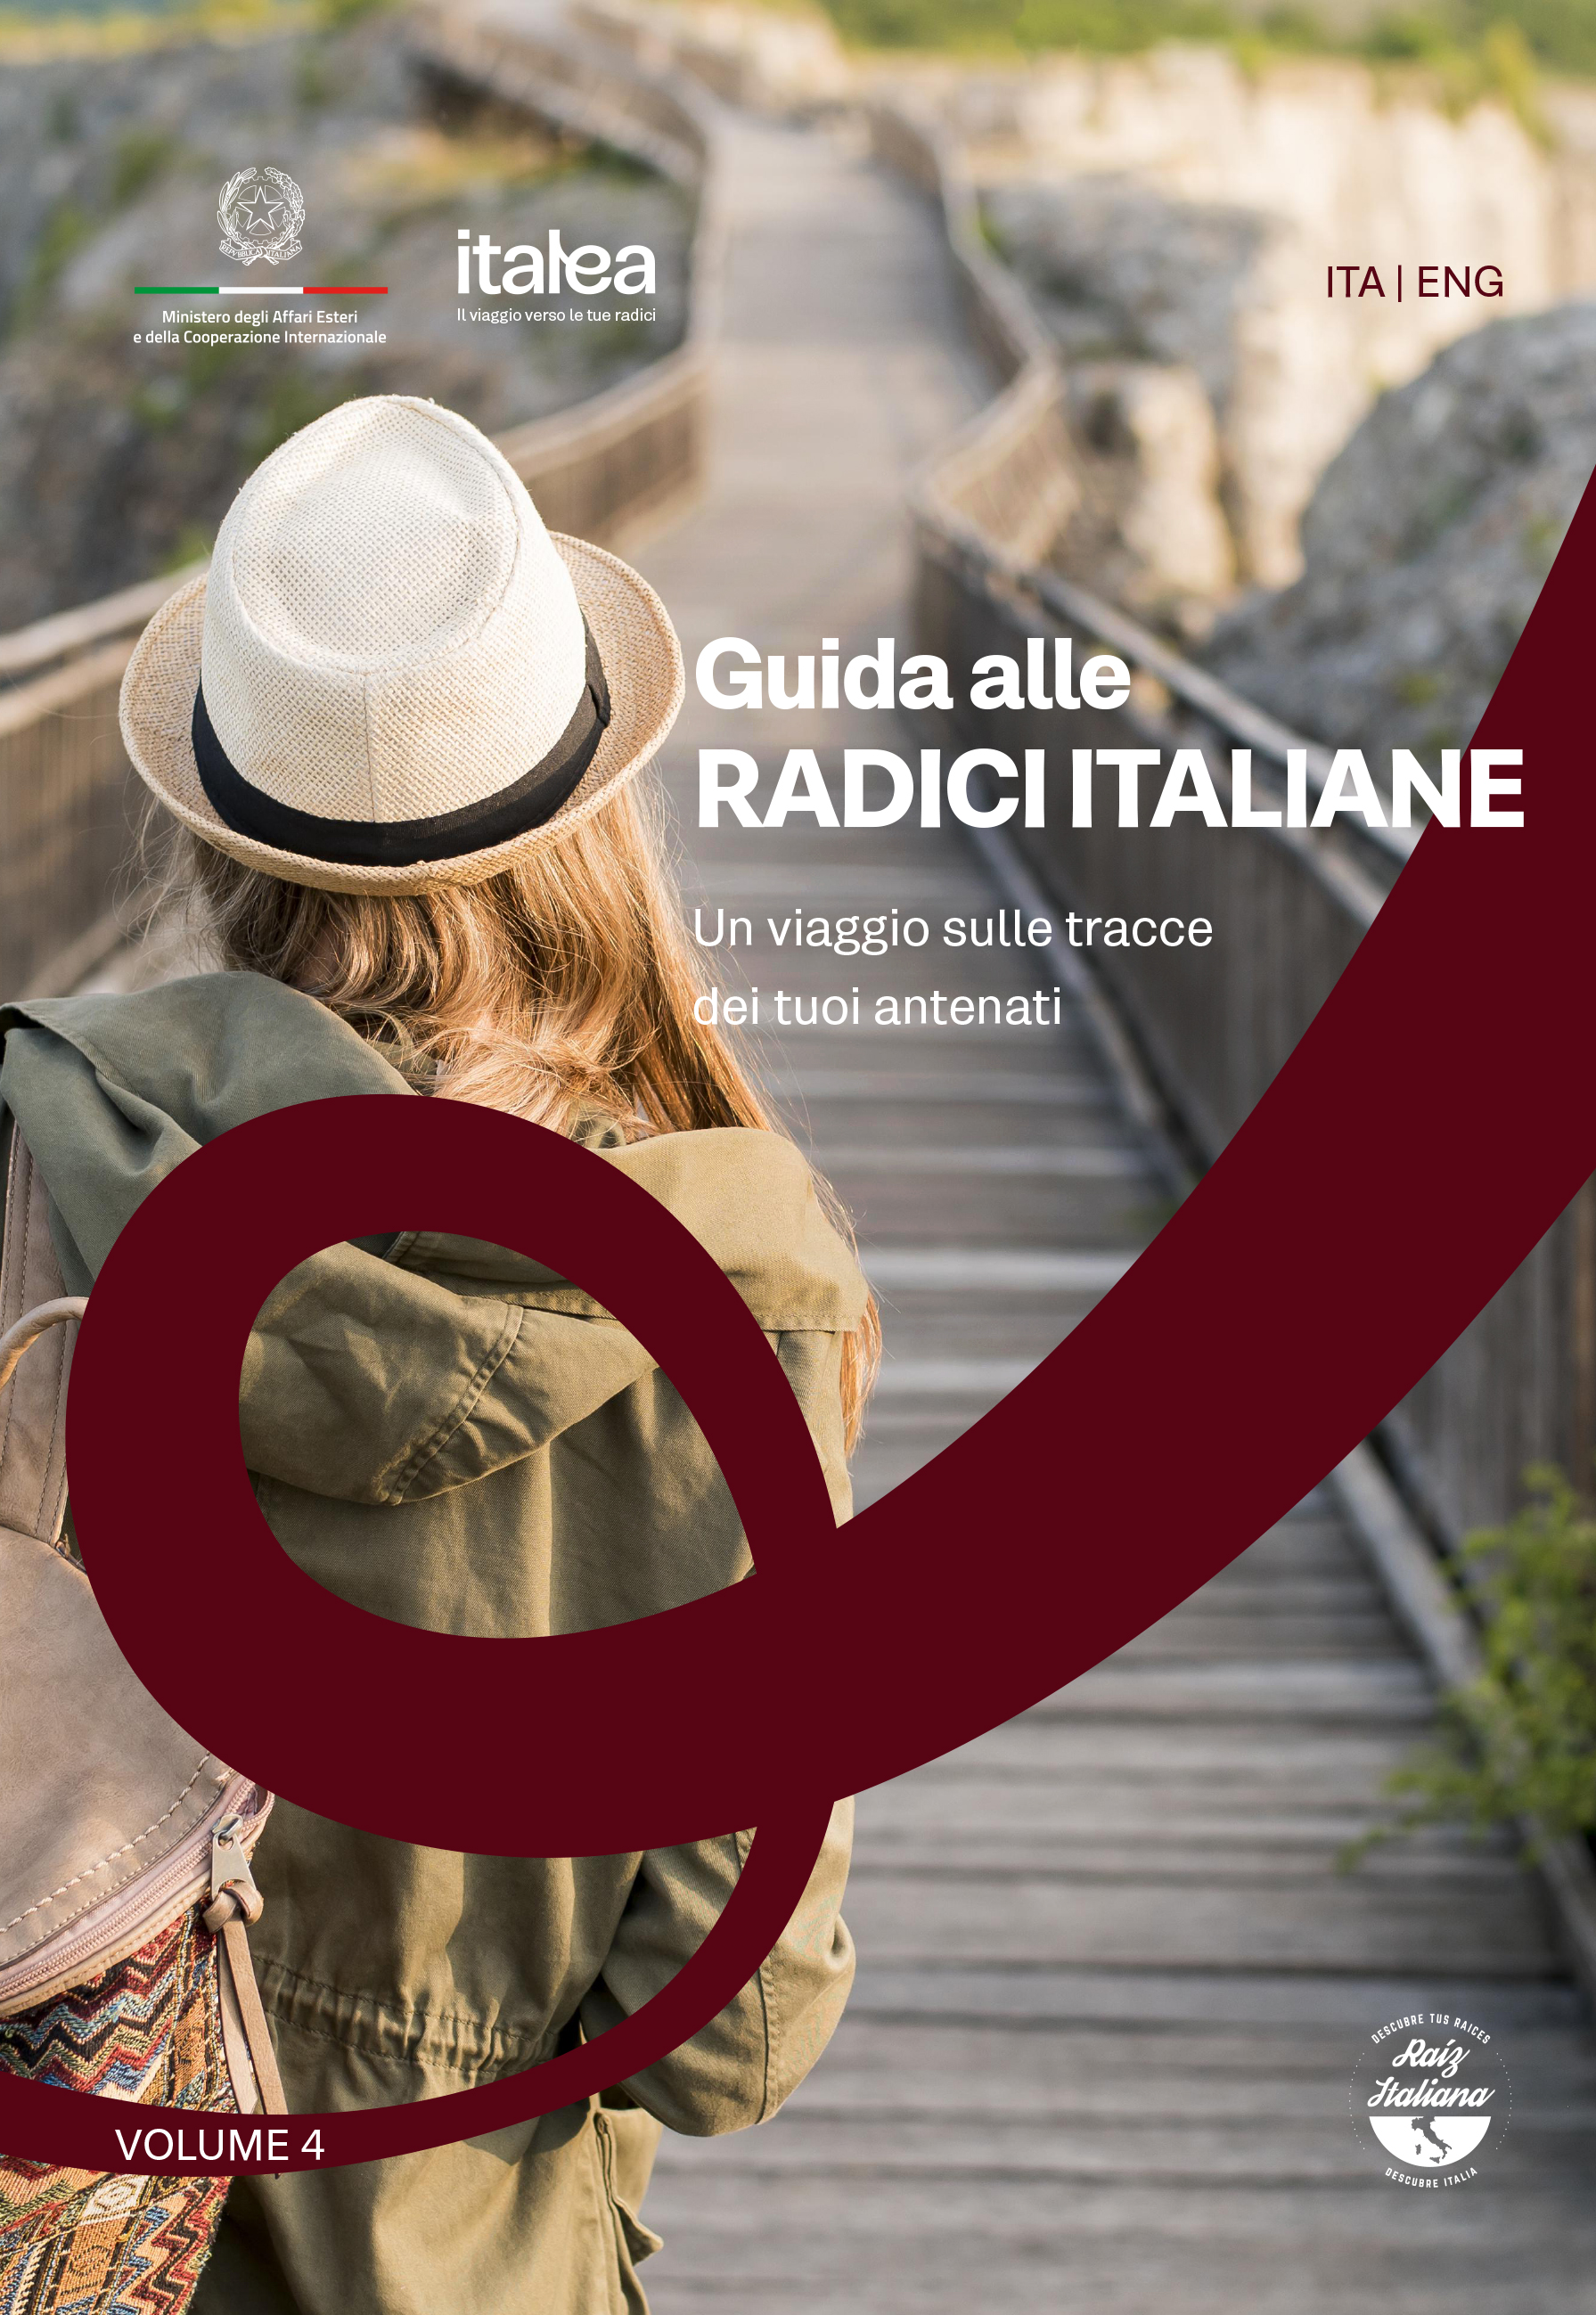 Guida alle radici italiane: presentazione a Torino